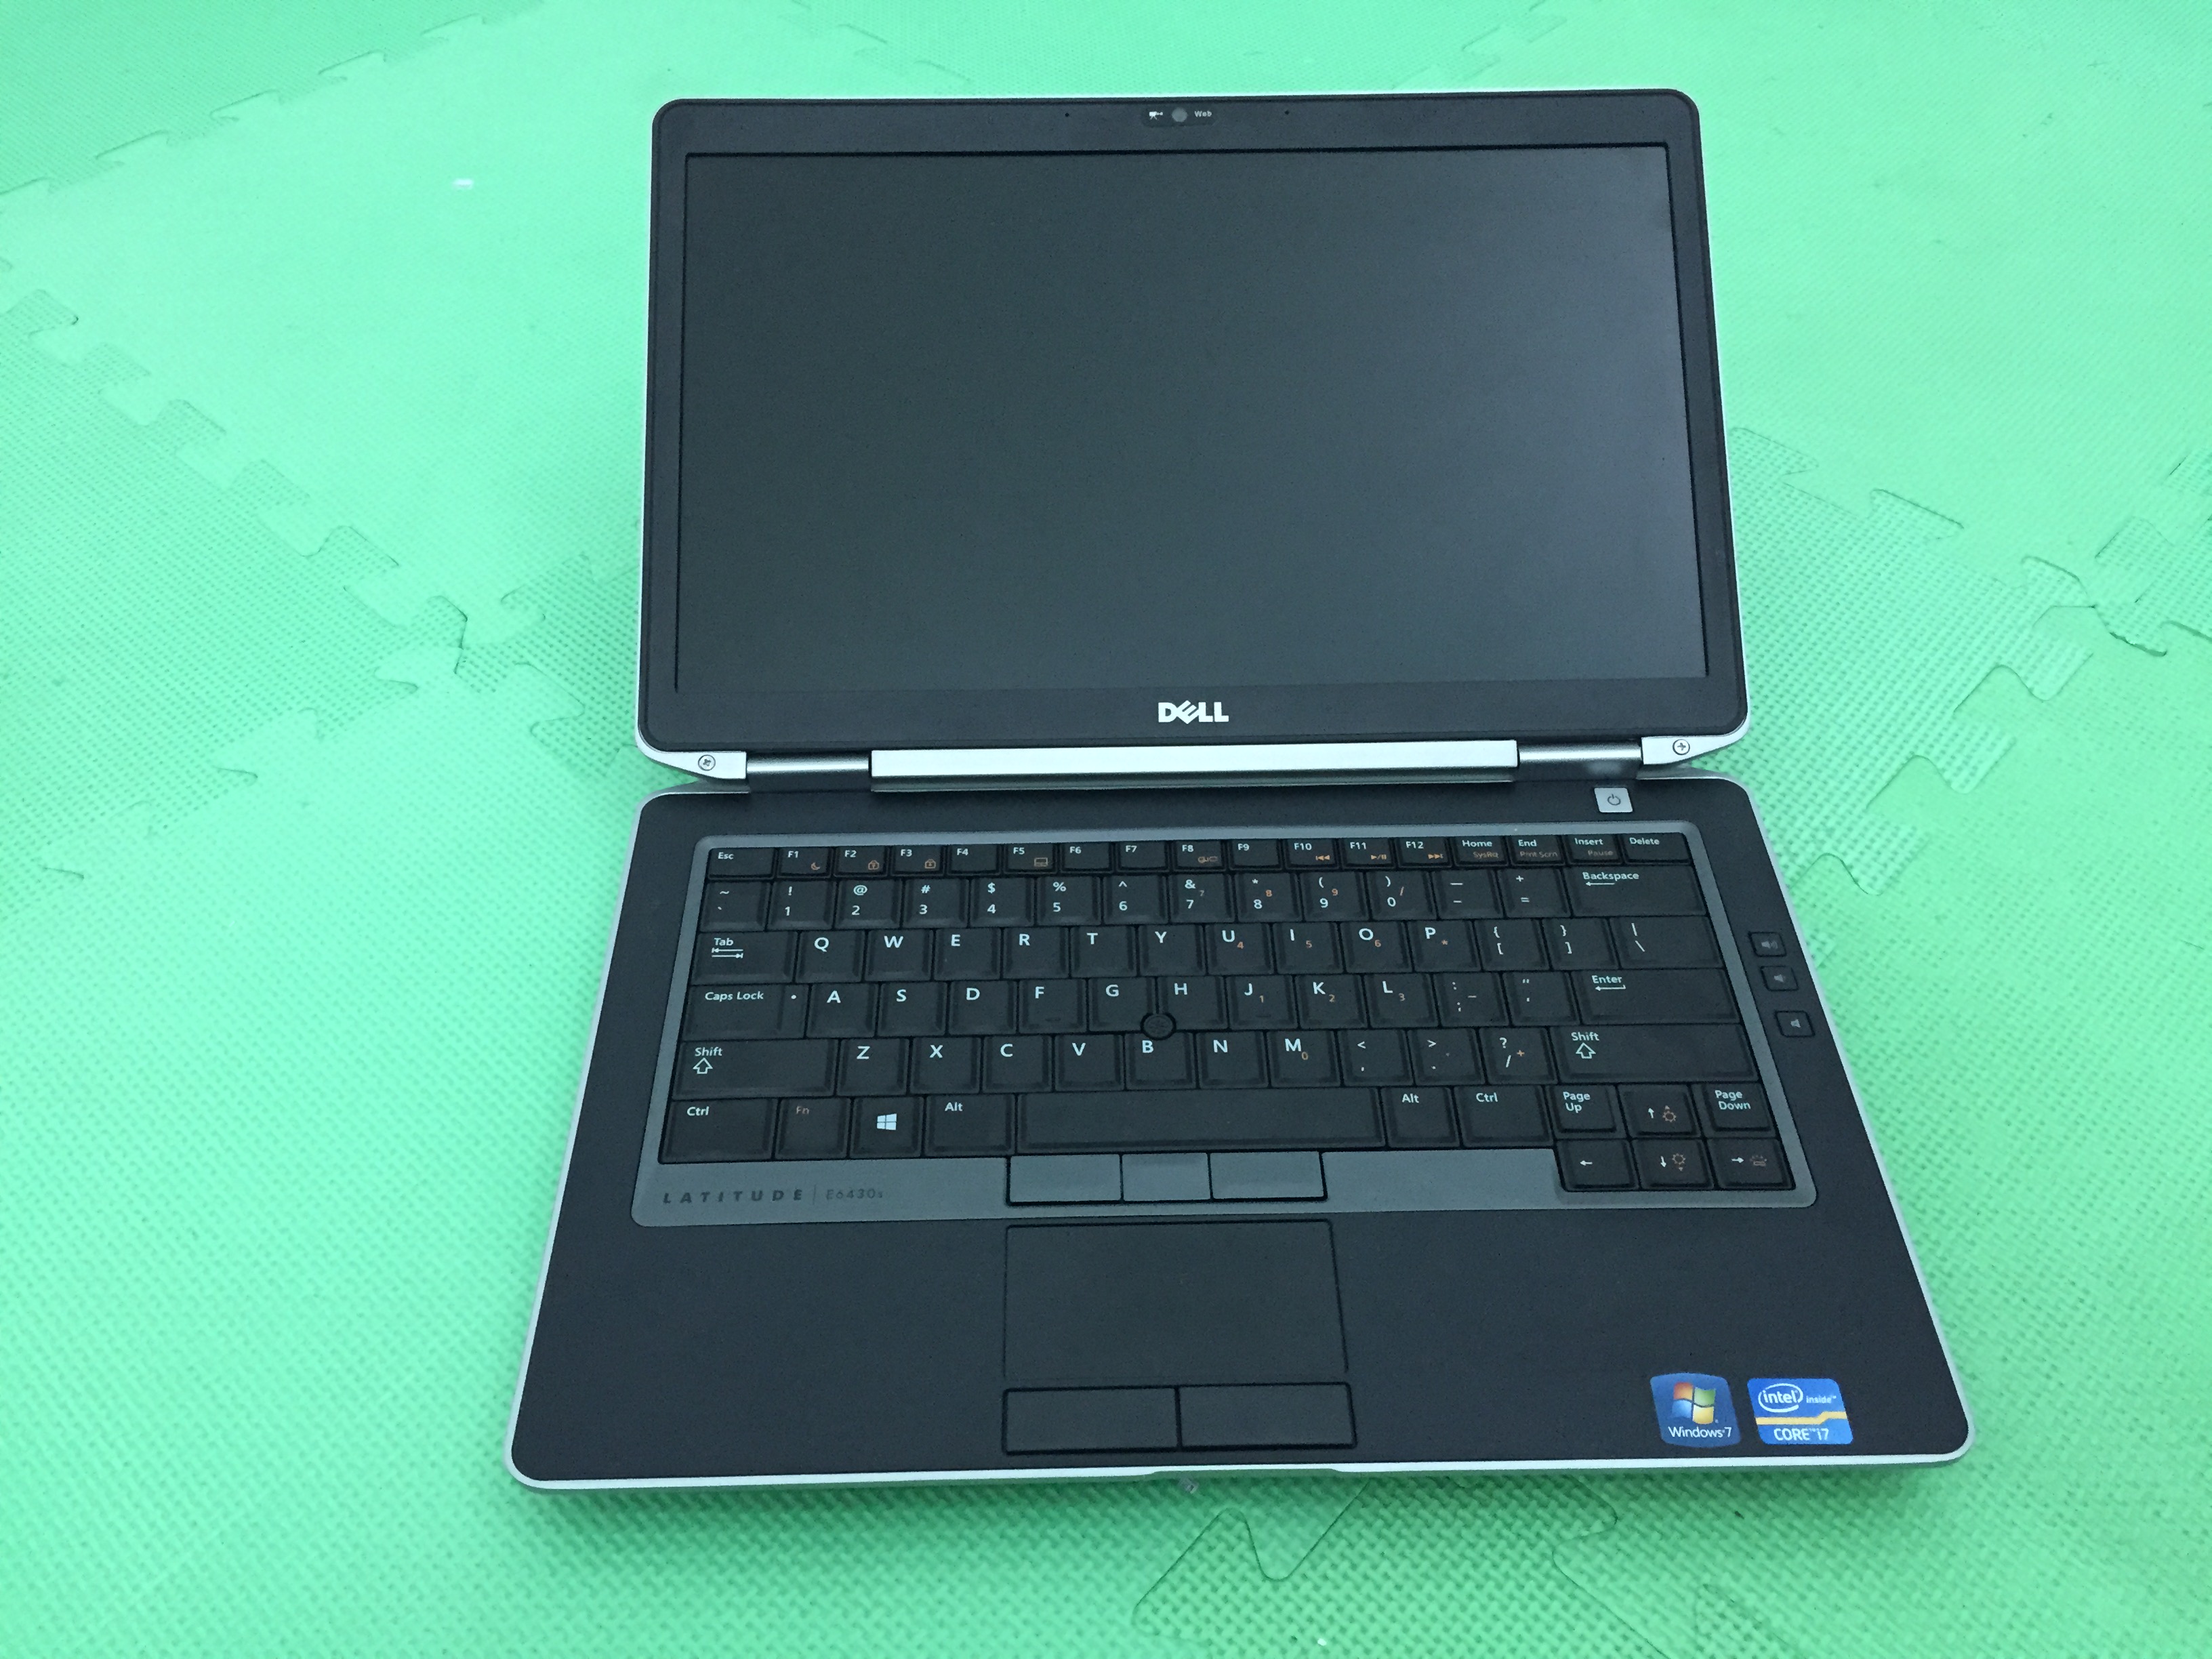 Laptop cũ Dell E6430s core i5-3320M, Ram 4GB, Ổ 250GB, Màn 14.0 inch LED HD